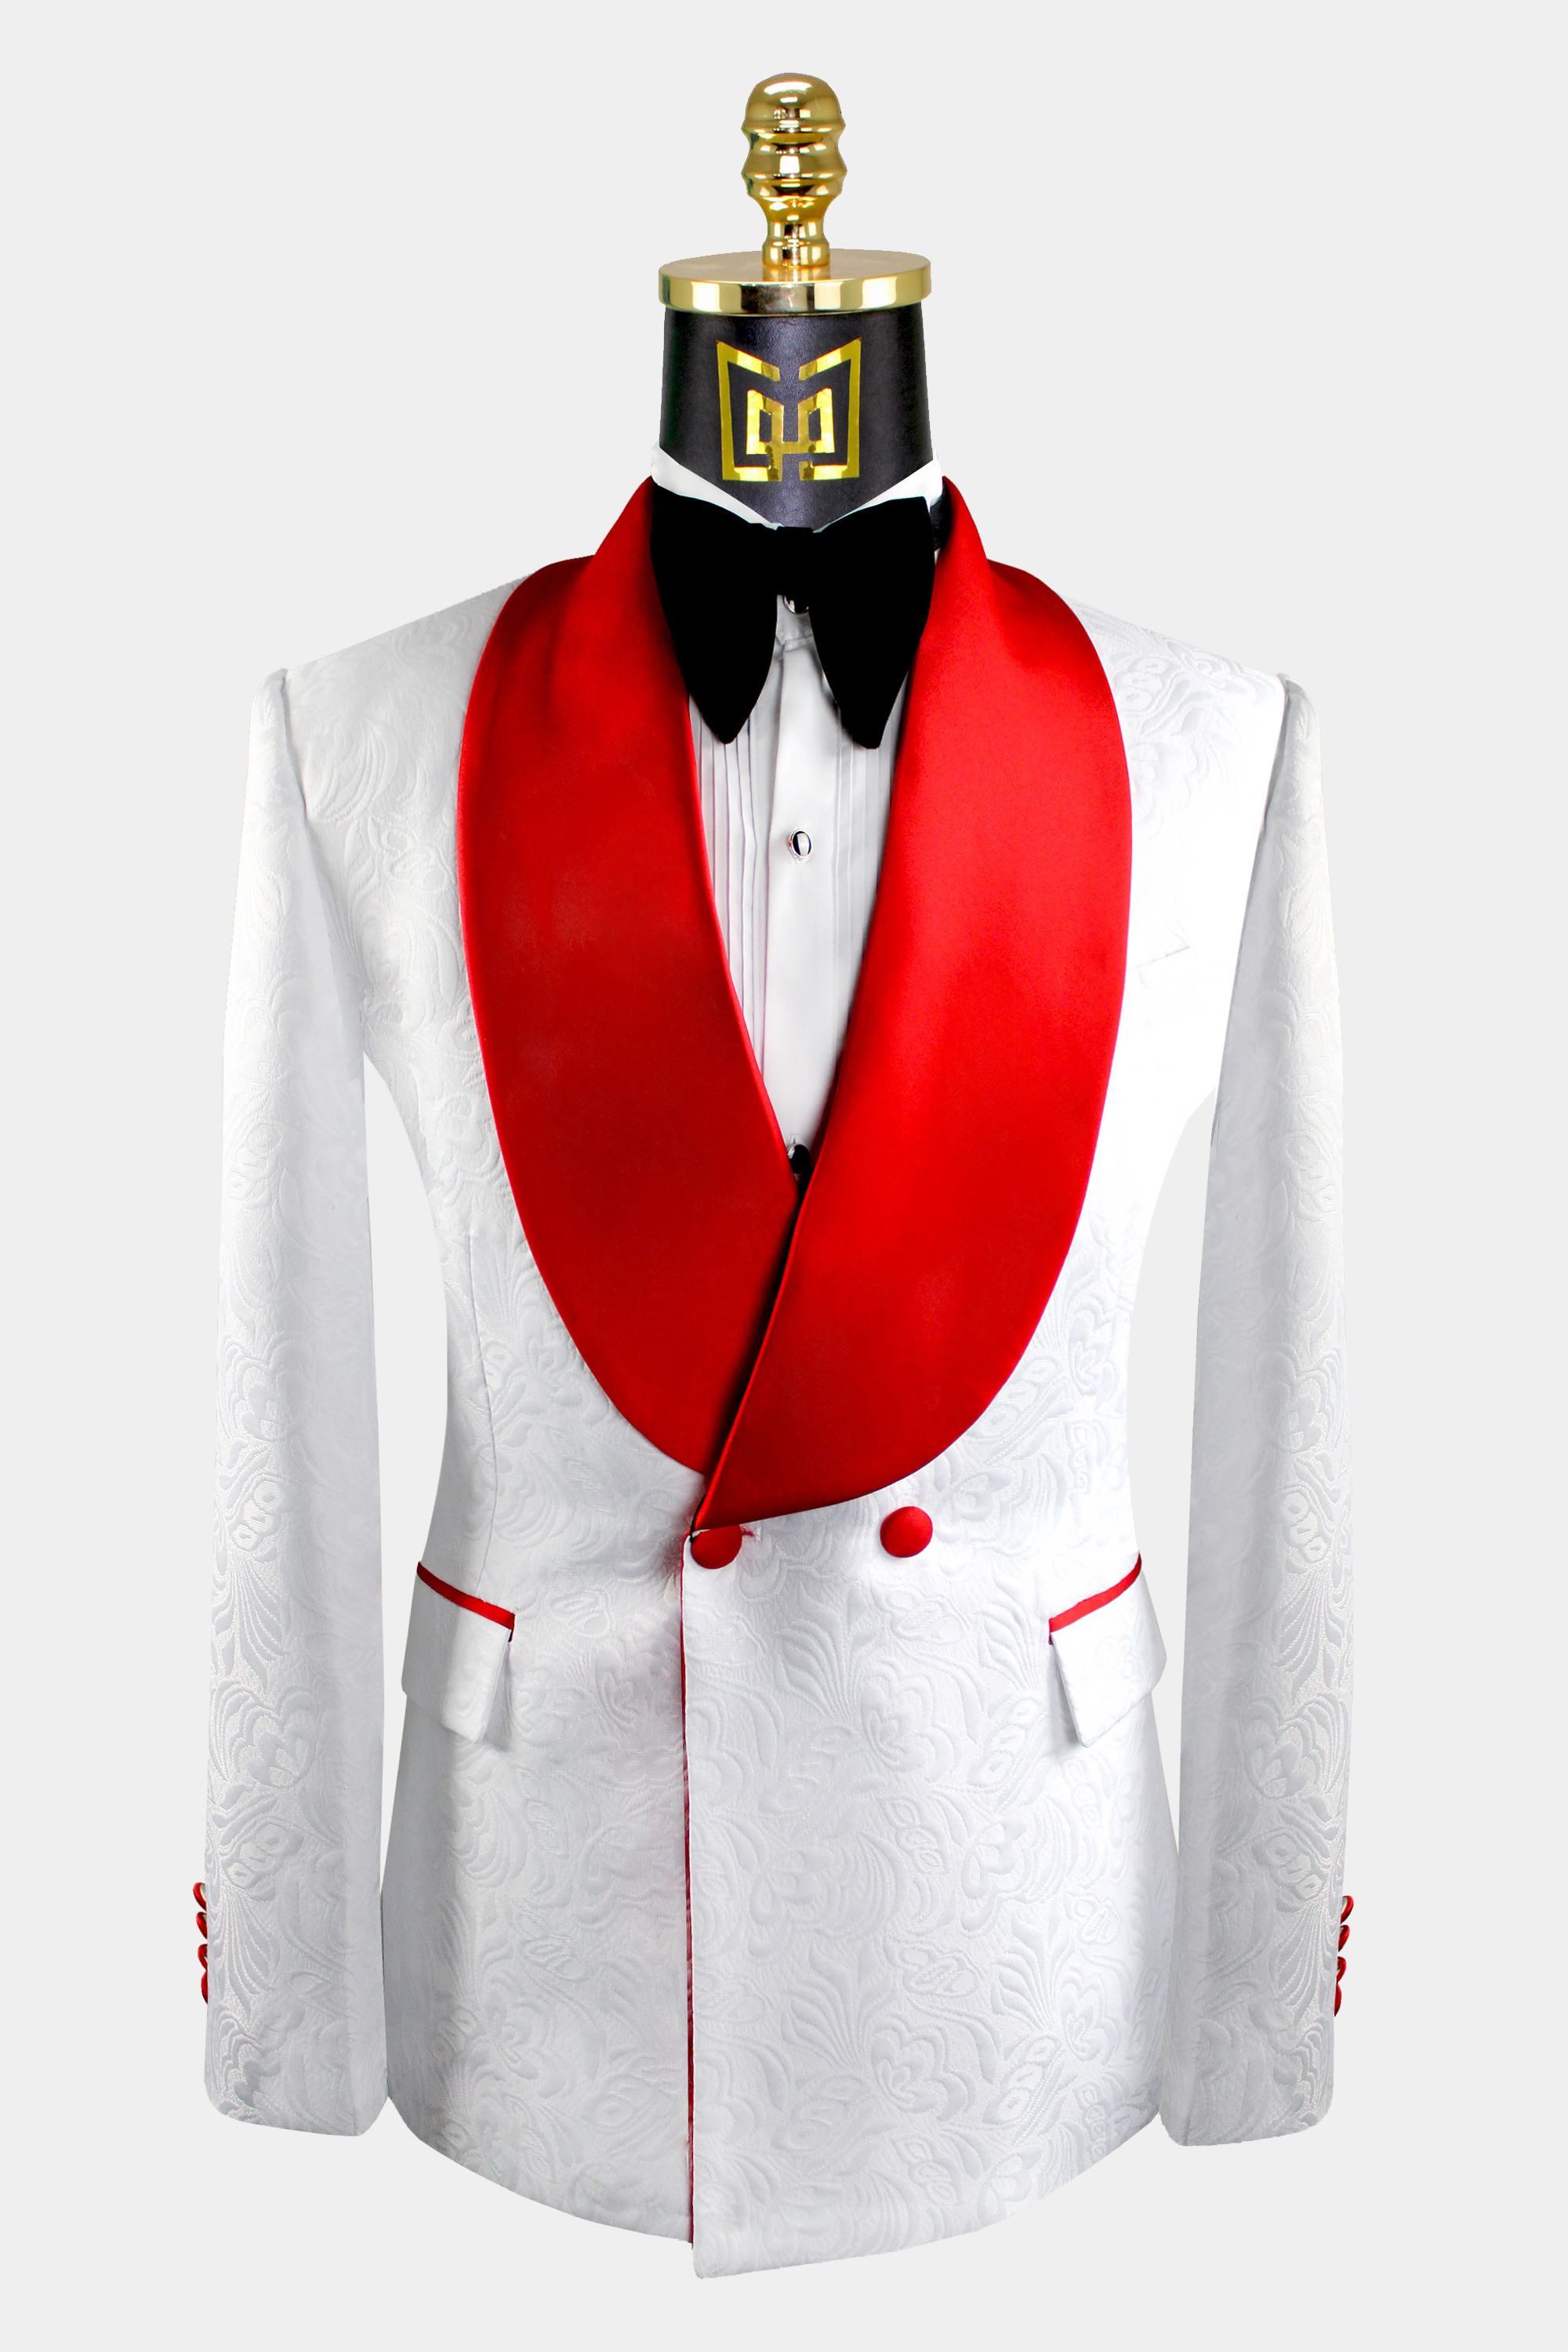 Mens-White-Tuxedo-with-Red-Trim-Jacket-Blazer-from-Gentlemansguru.com_